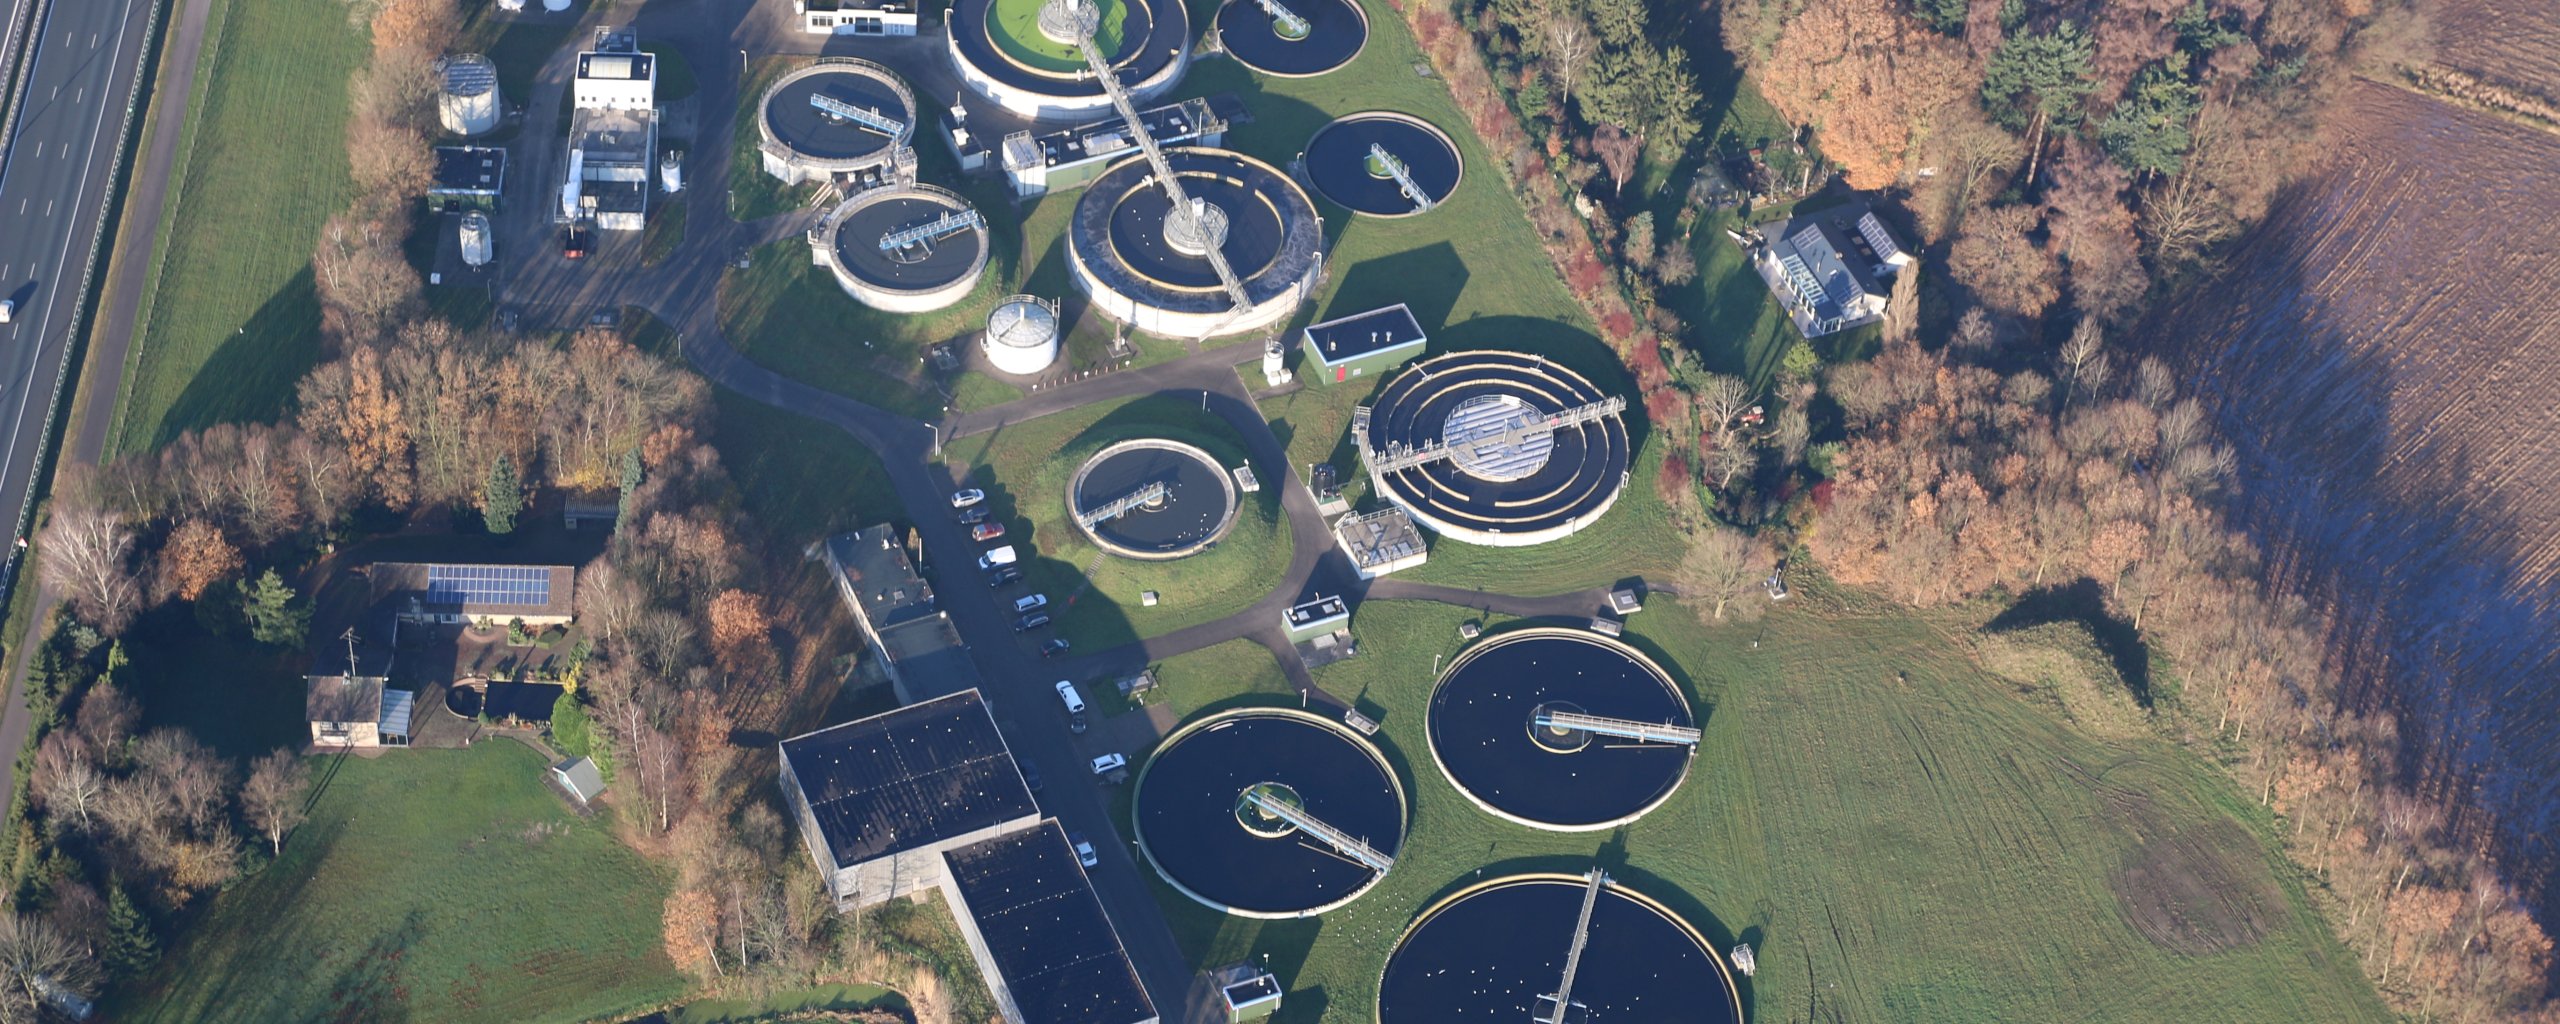 Een luchtfoto van het terrein van de rioolwaterzuivering in Boxtel